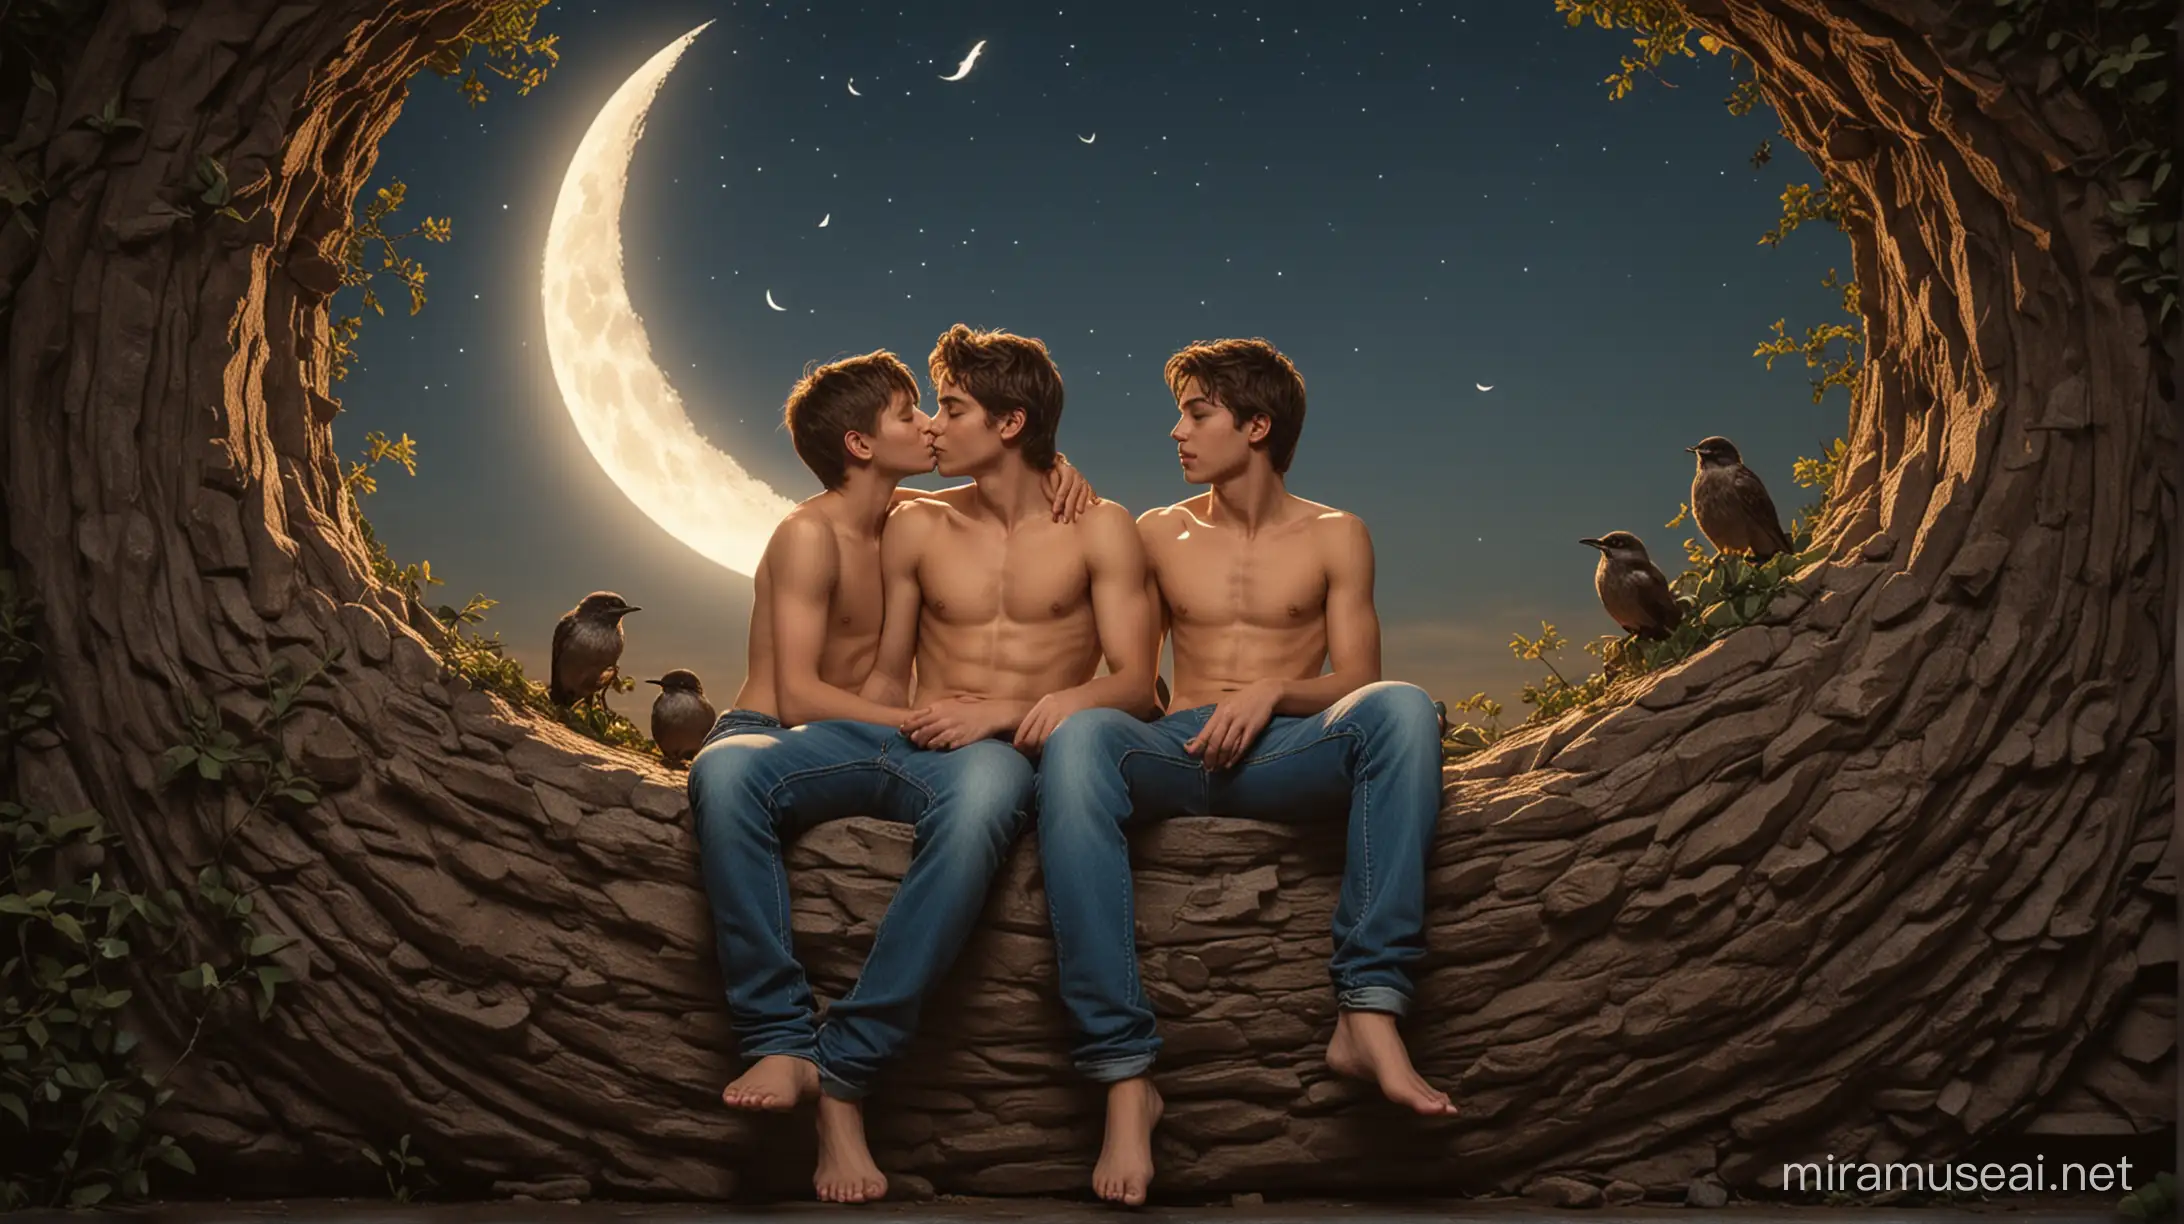 Dois rapazes descalços e sem camisa, usando calças jeans, sentados lado a lado no vão de uma lua crescente, beijam-se na boca, cercados de pássaros.